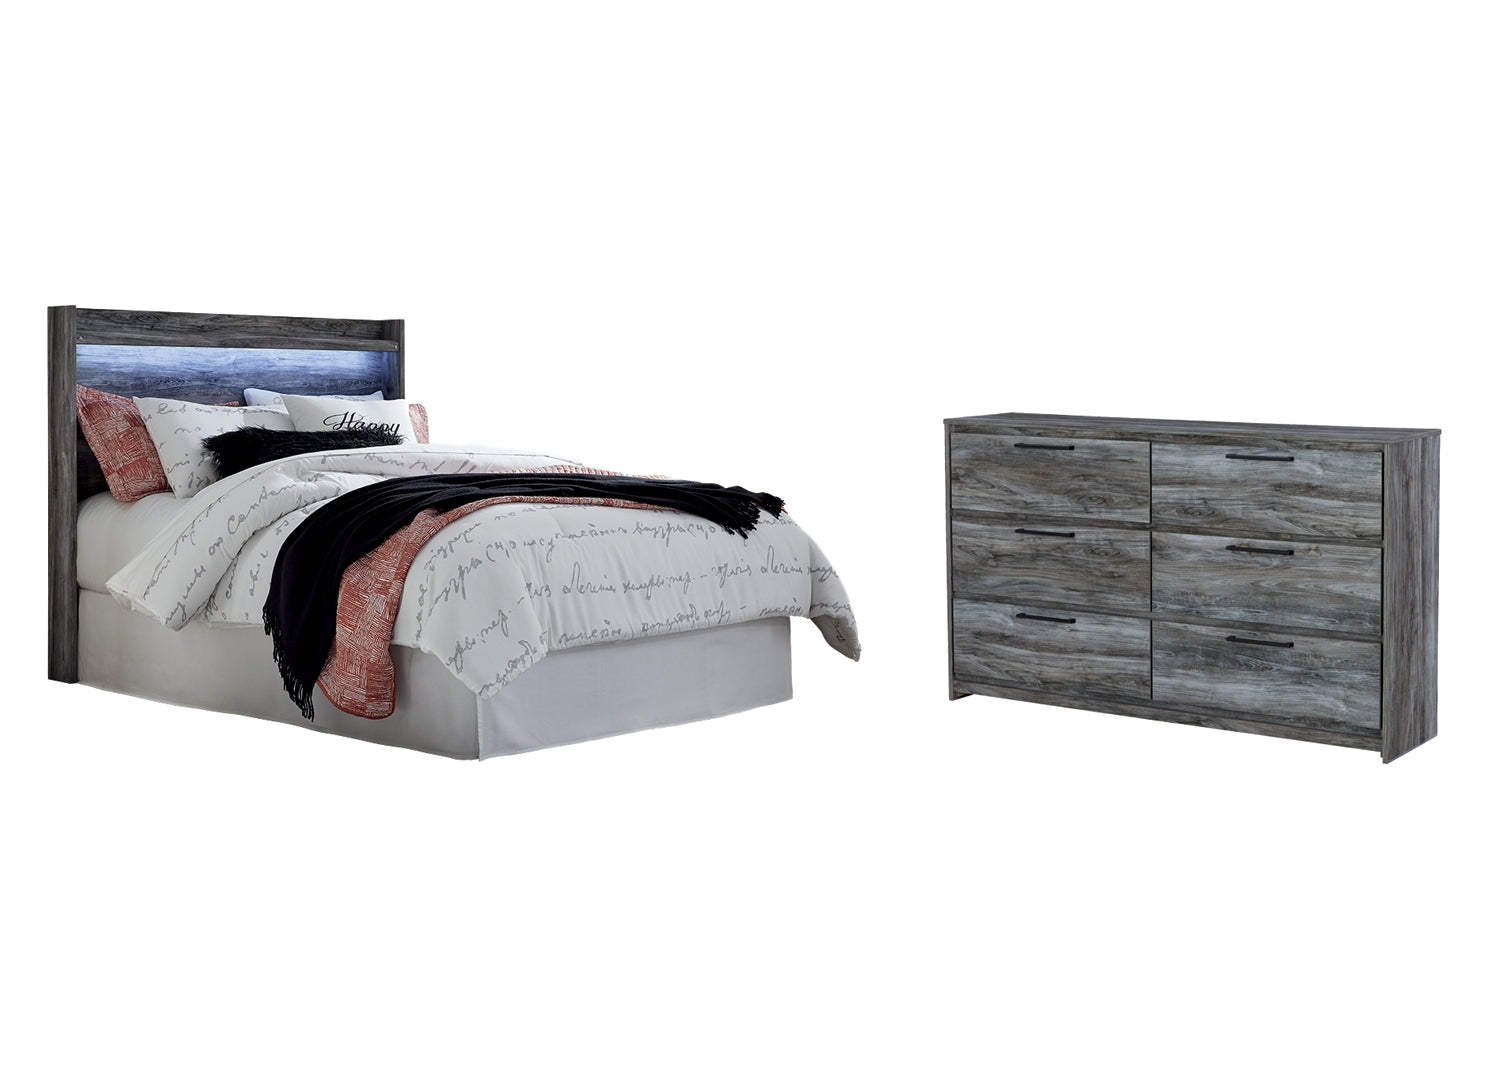 Baystorm Queen Panel Headboard Bed with Dresser